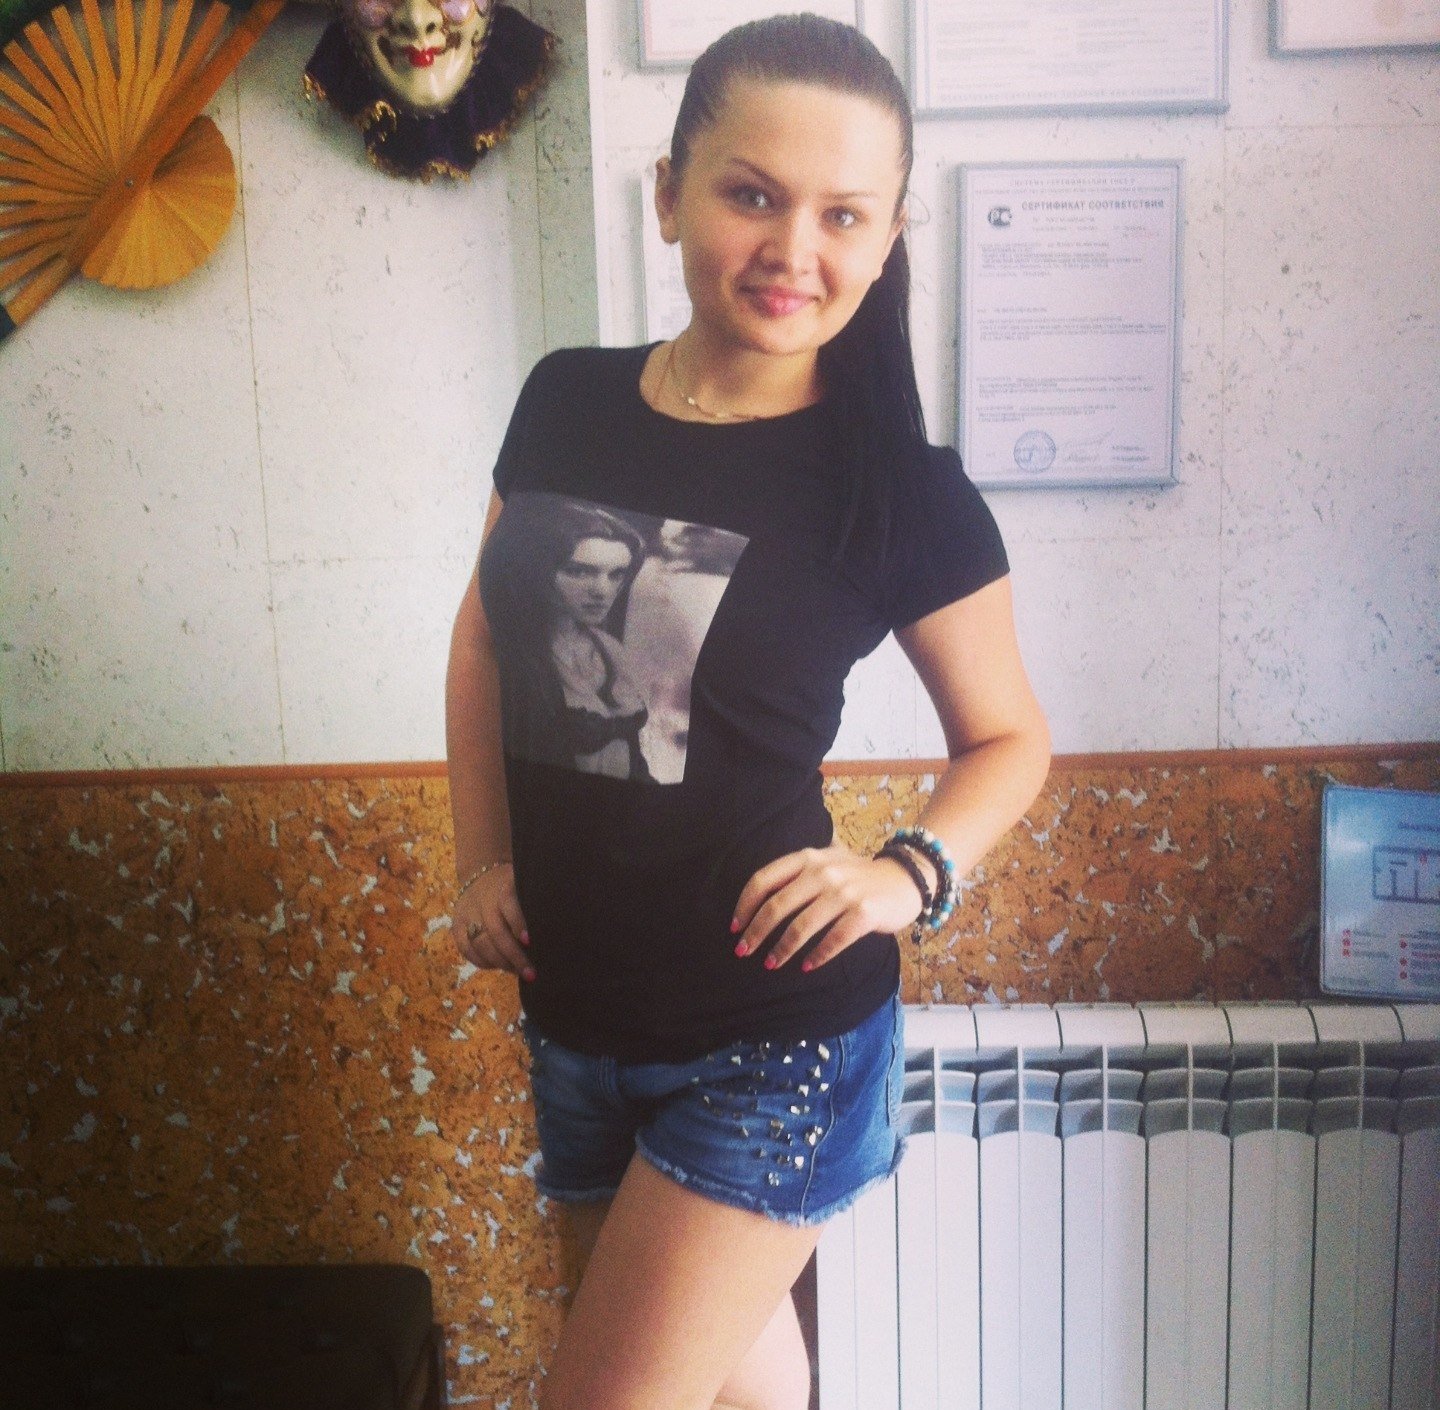 Проститутка Наташа возрастом 24 с ростом 172 см для интима в Москве